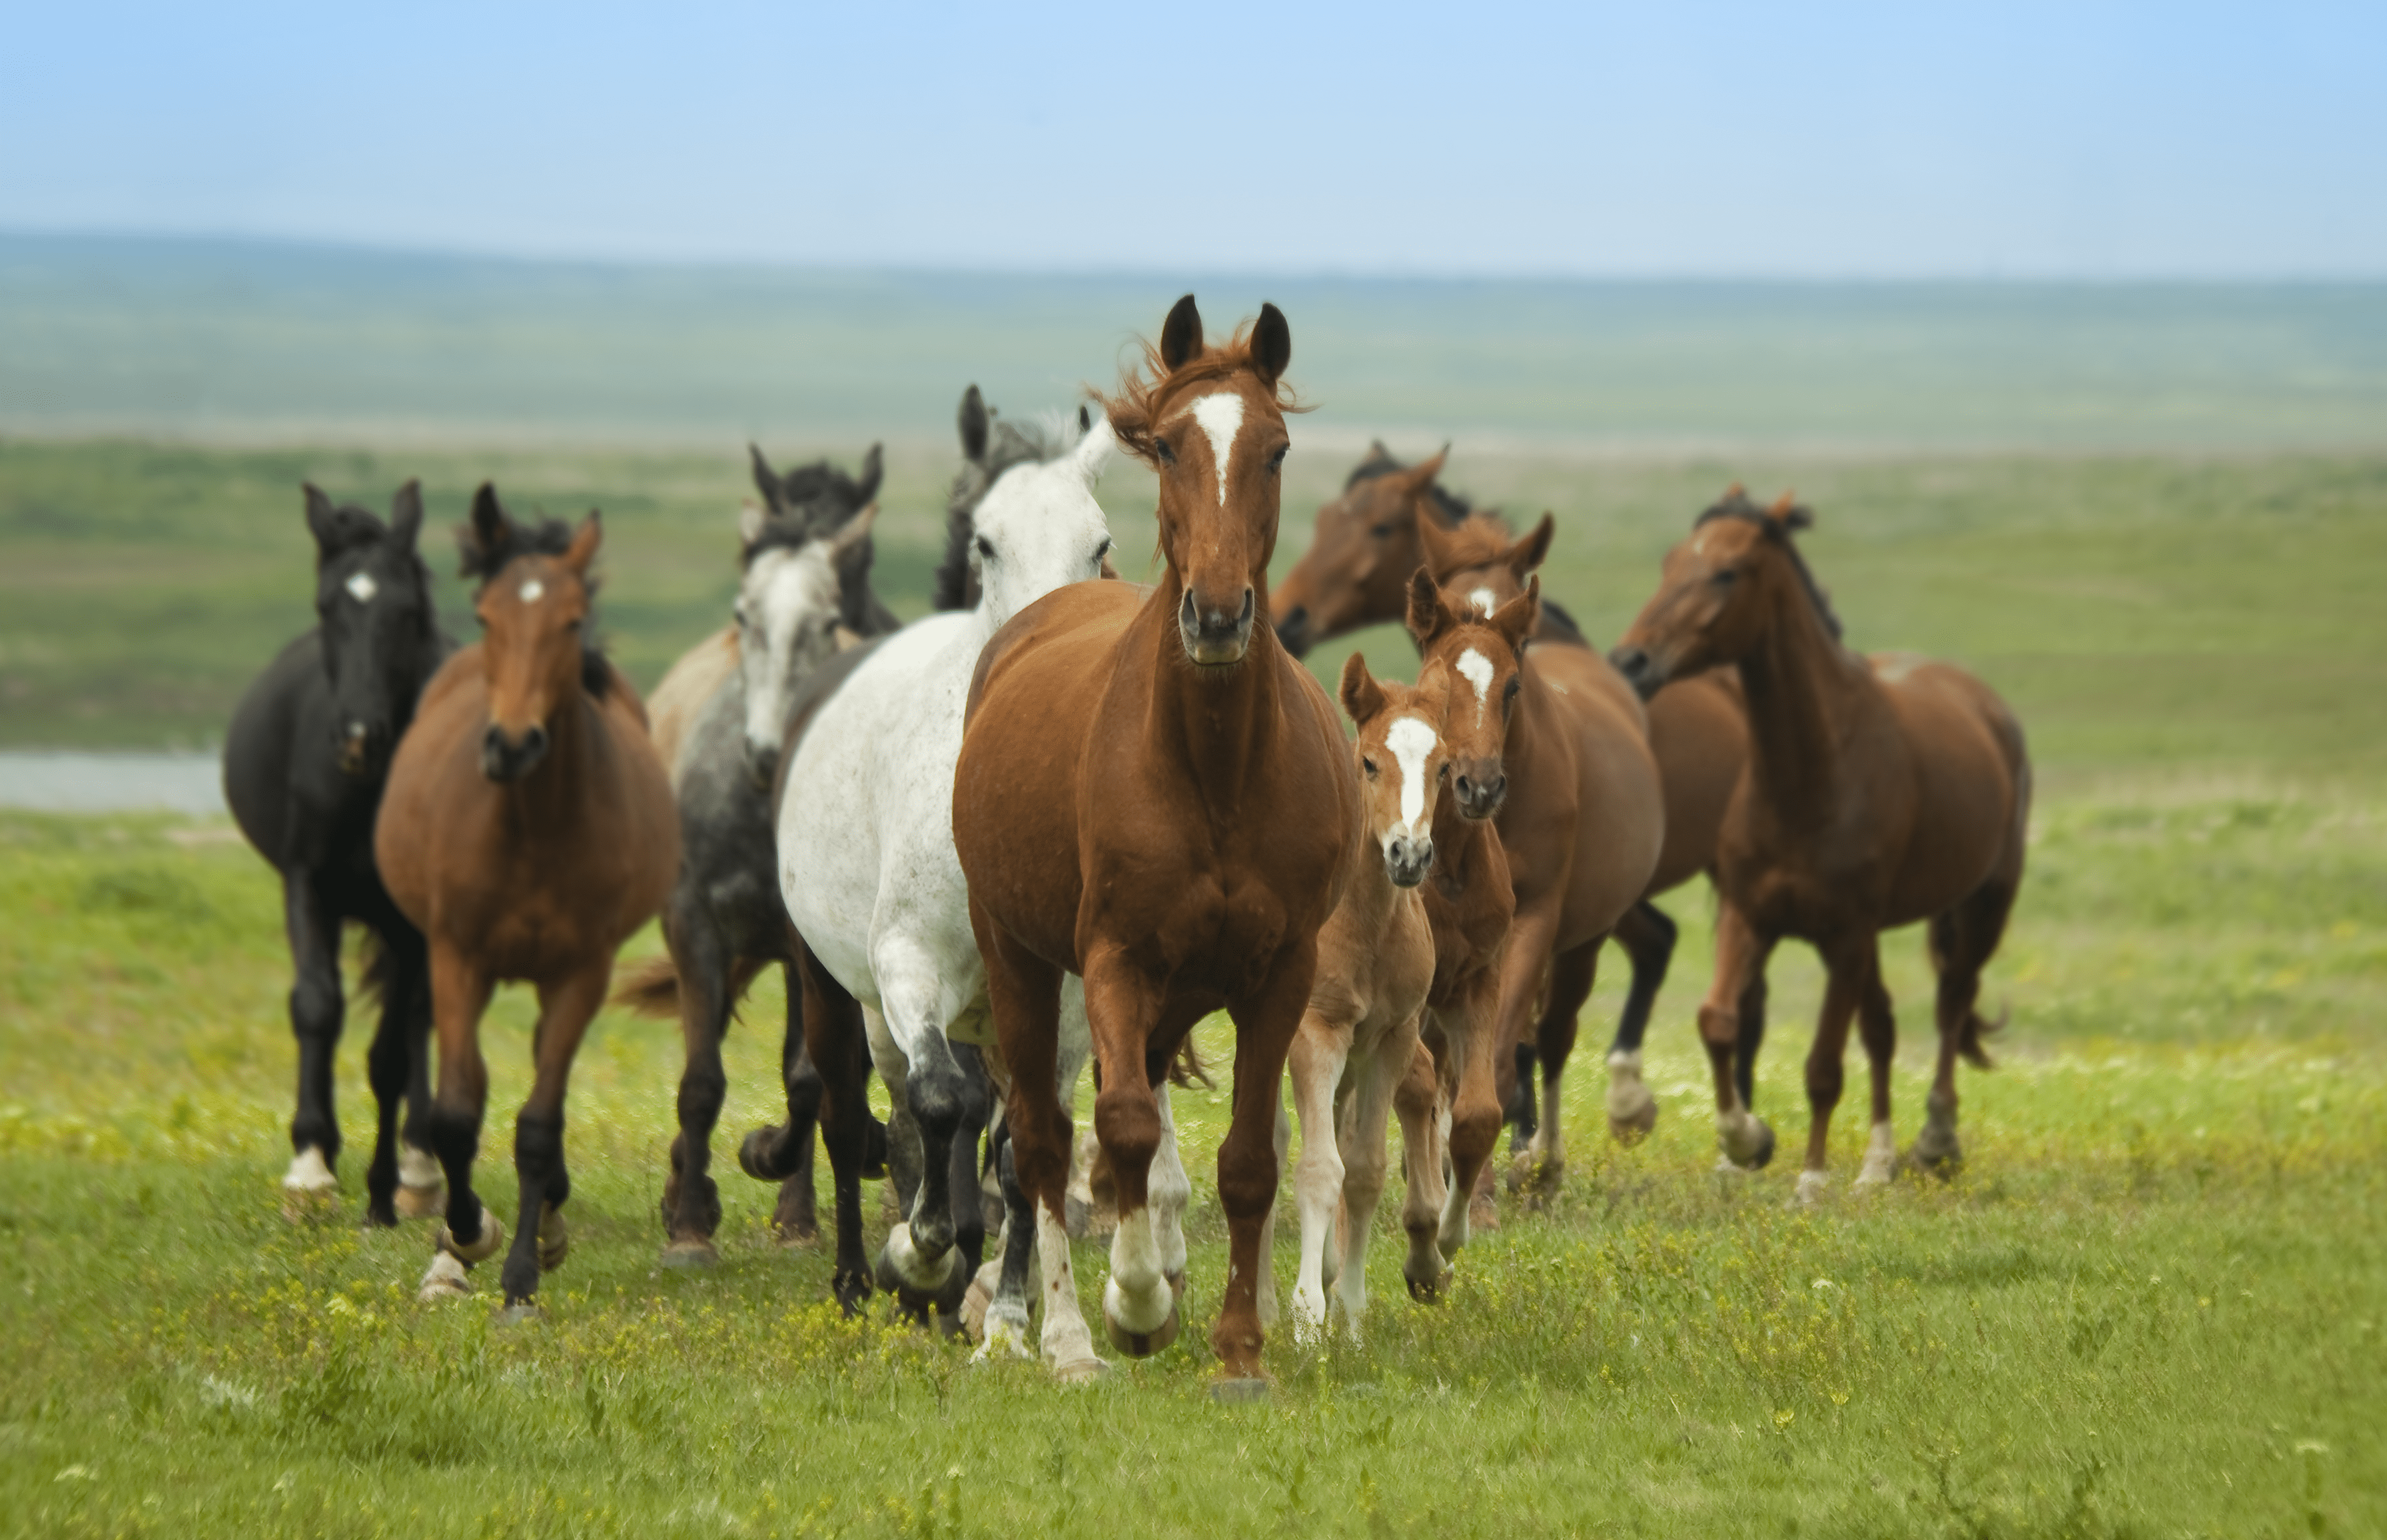 Horse Genetics 2.0: Colours  Laboratoire de génétique vétérinaire